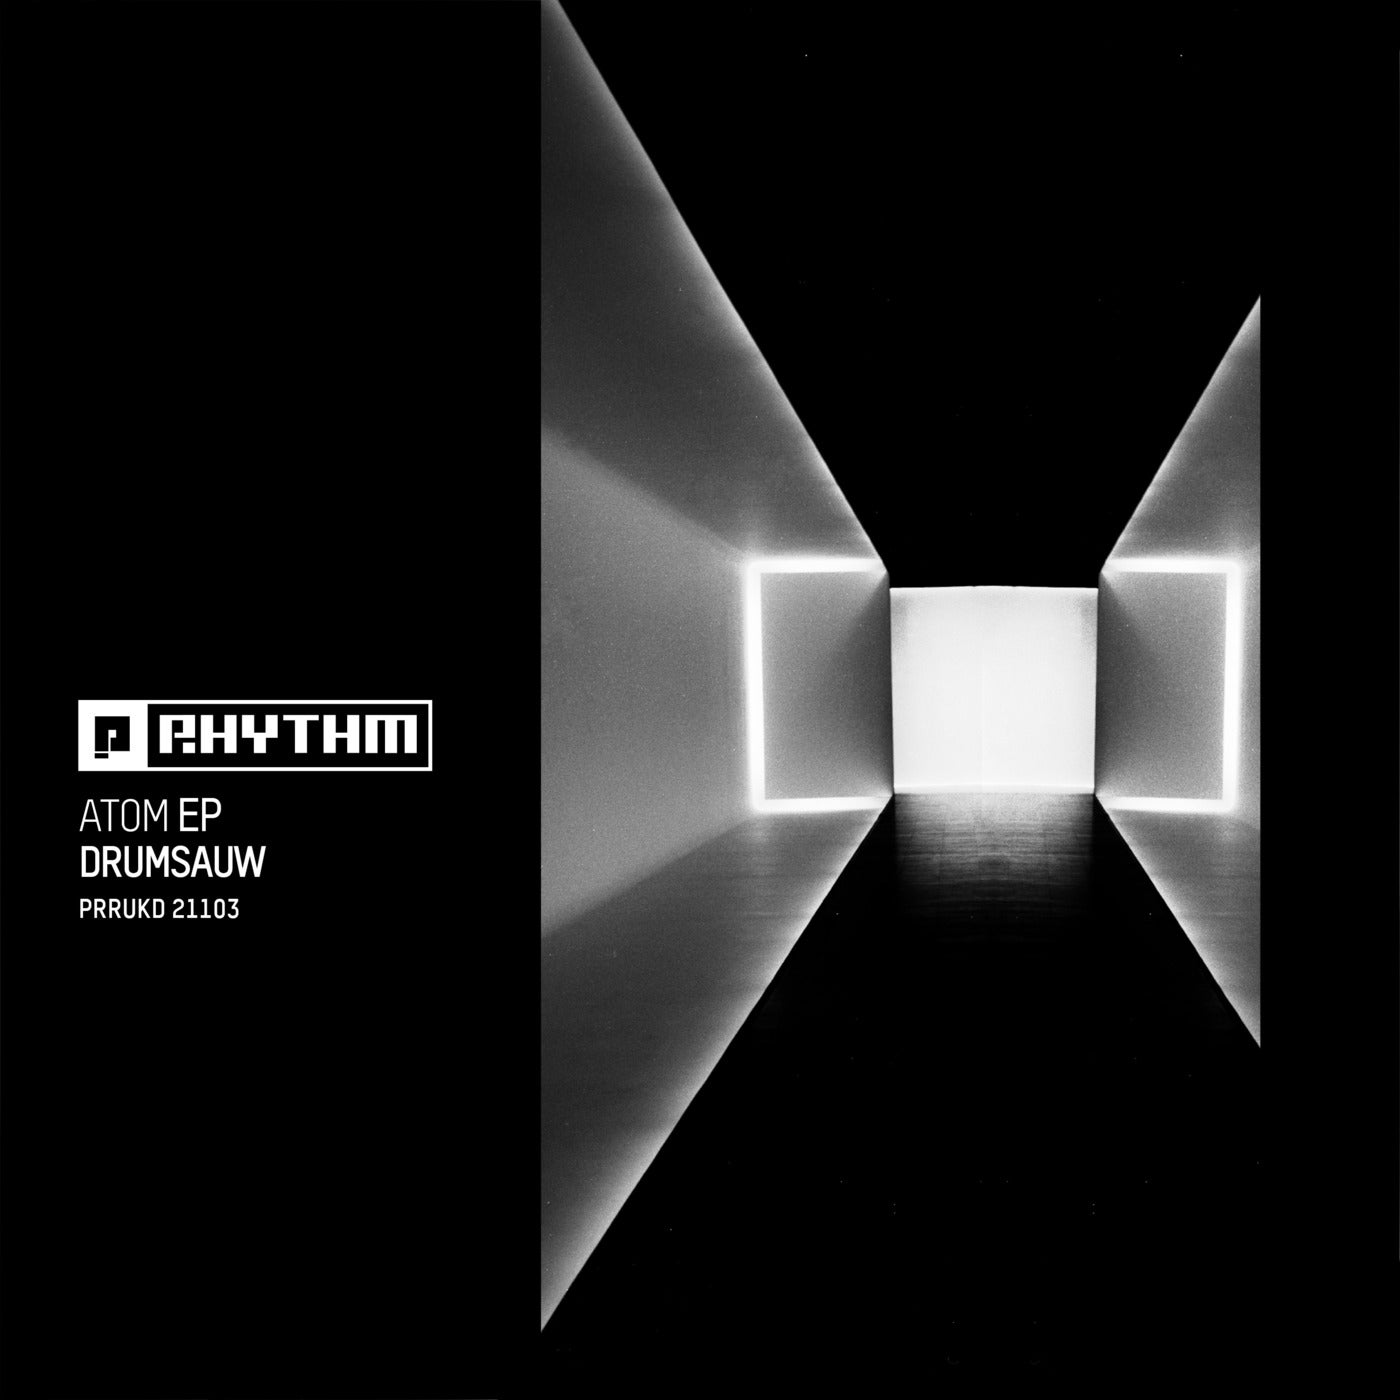 Drumsauw – Atom EP [PRRUKD21103]